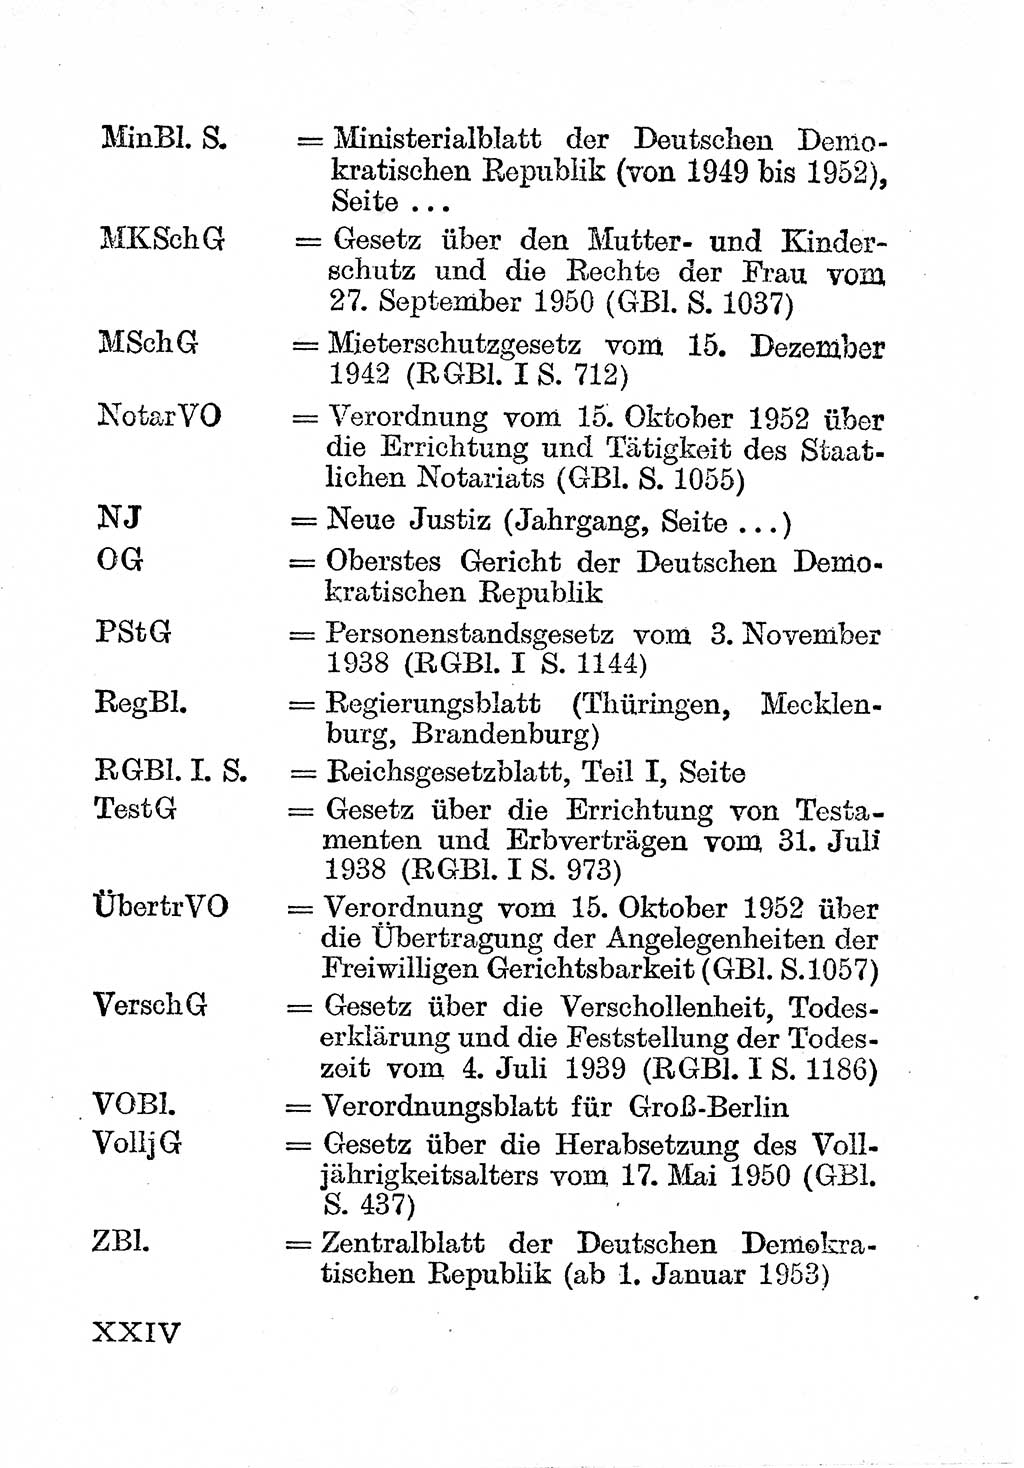 Einleitung Bürgerliches Gesetzbuch (BGB) nebst wichtigen Nebengesetzen [Deutsche Demokratische Republik (DDR)] 1956, Seite 24 (Einl. BGB Nebenges. DDR 1956, S. 24)